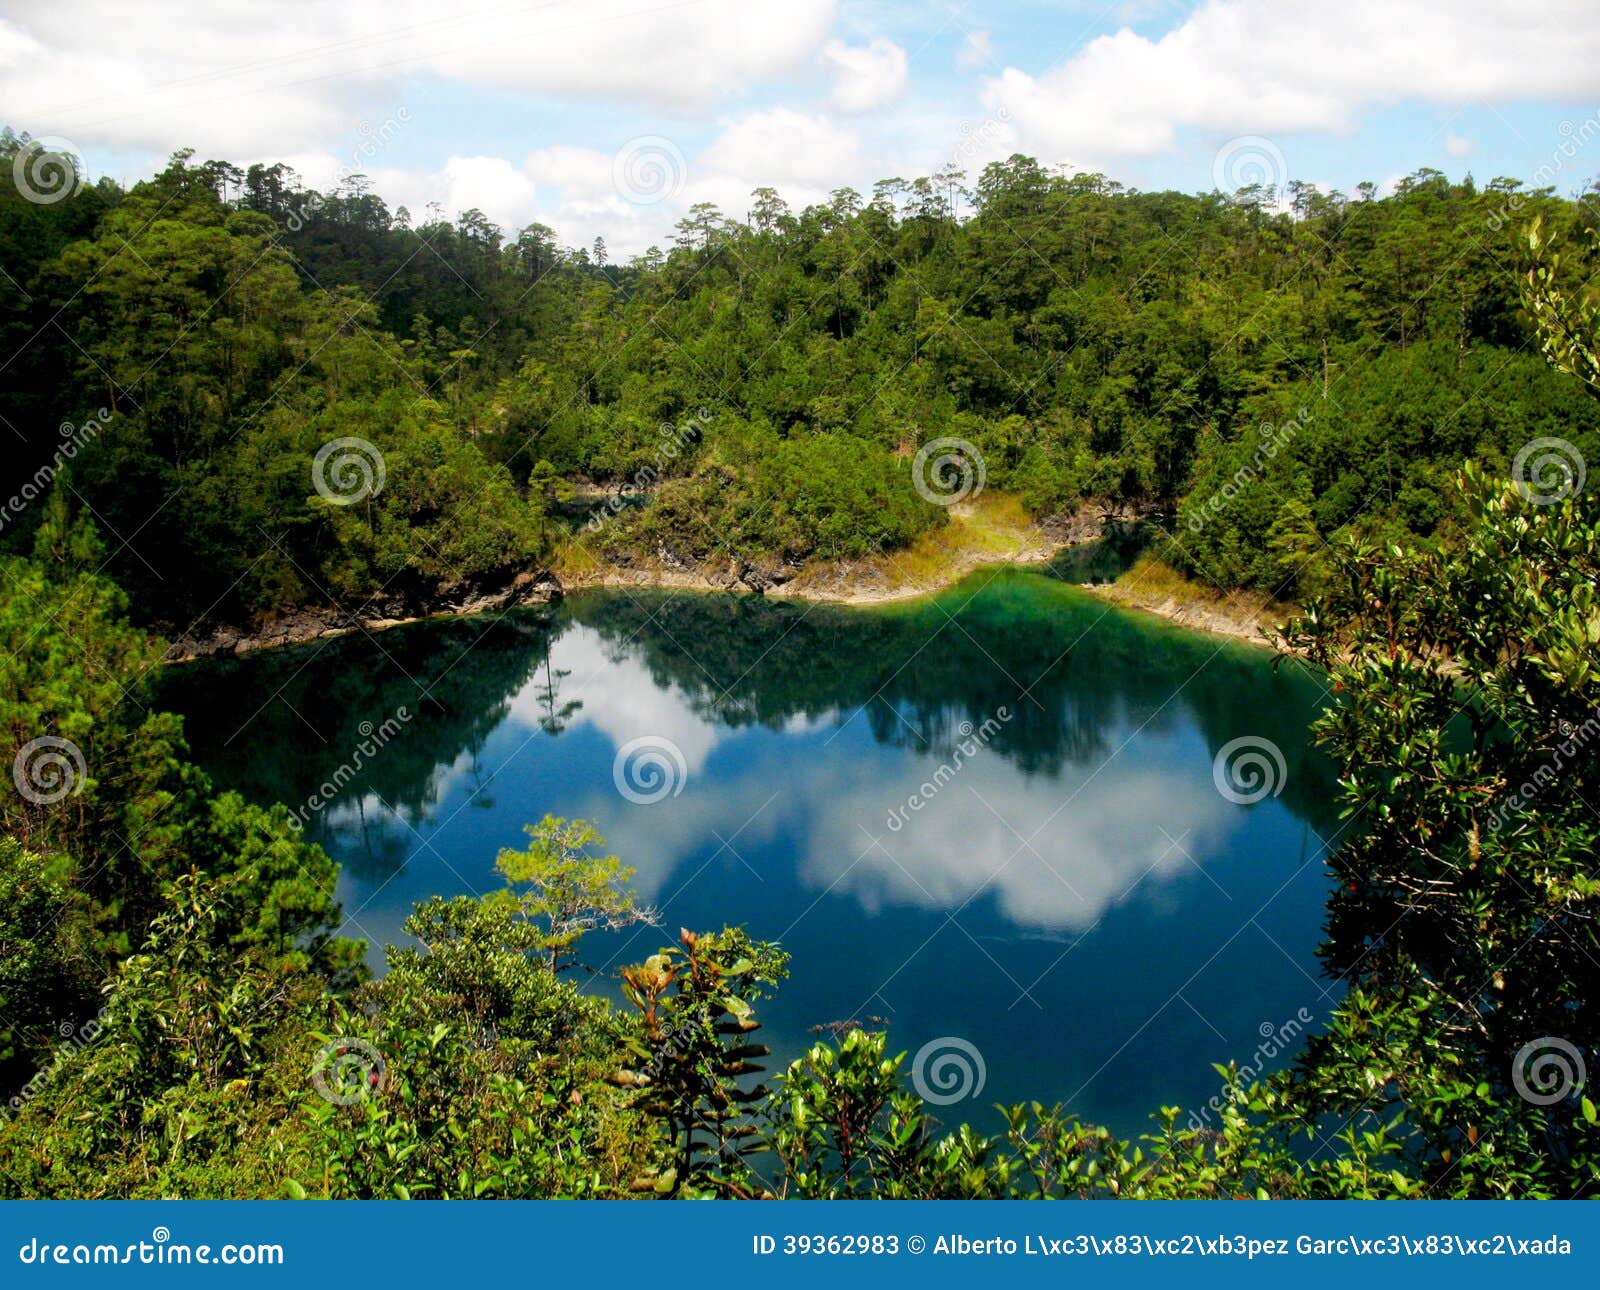 Los lagos de Montebello. El lago increíble en Montebello (Chiapas, México)